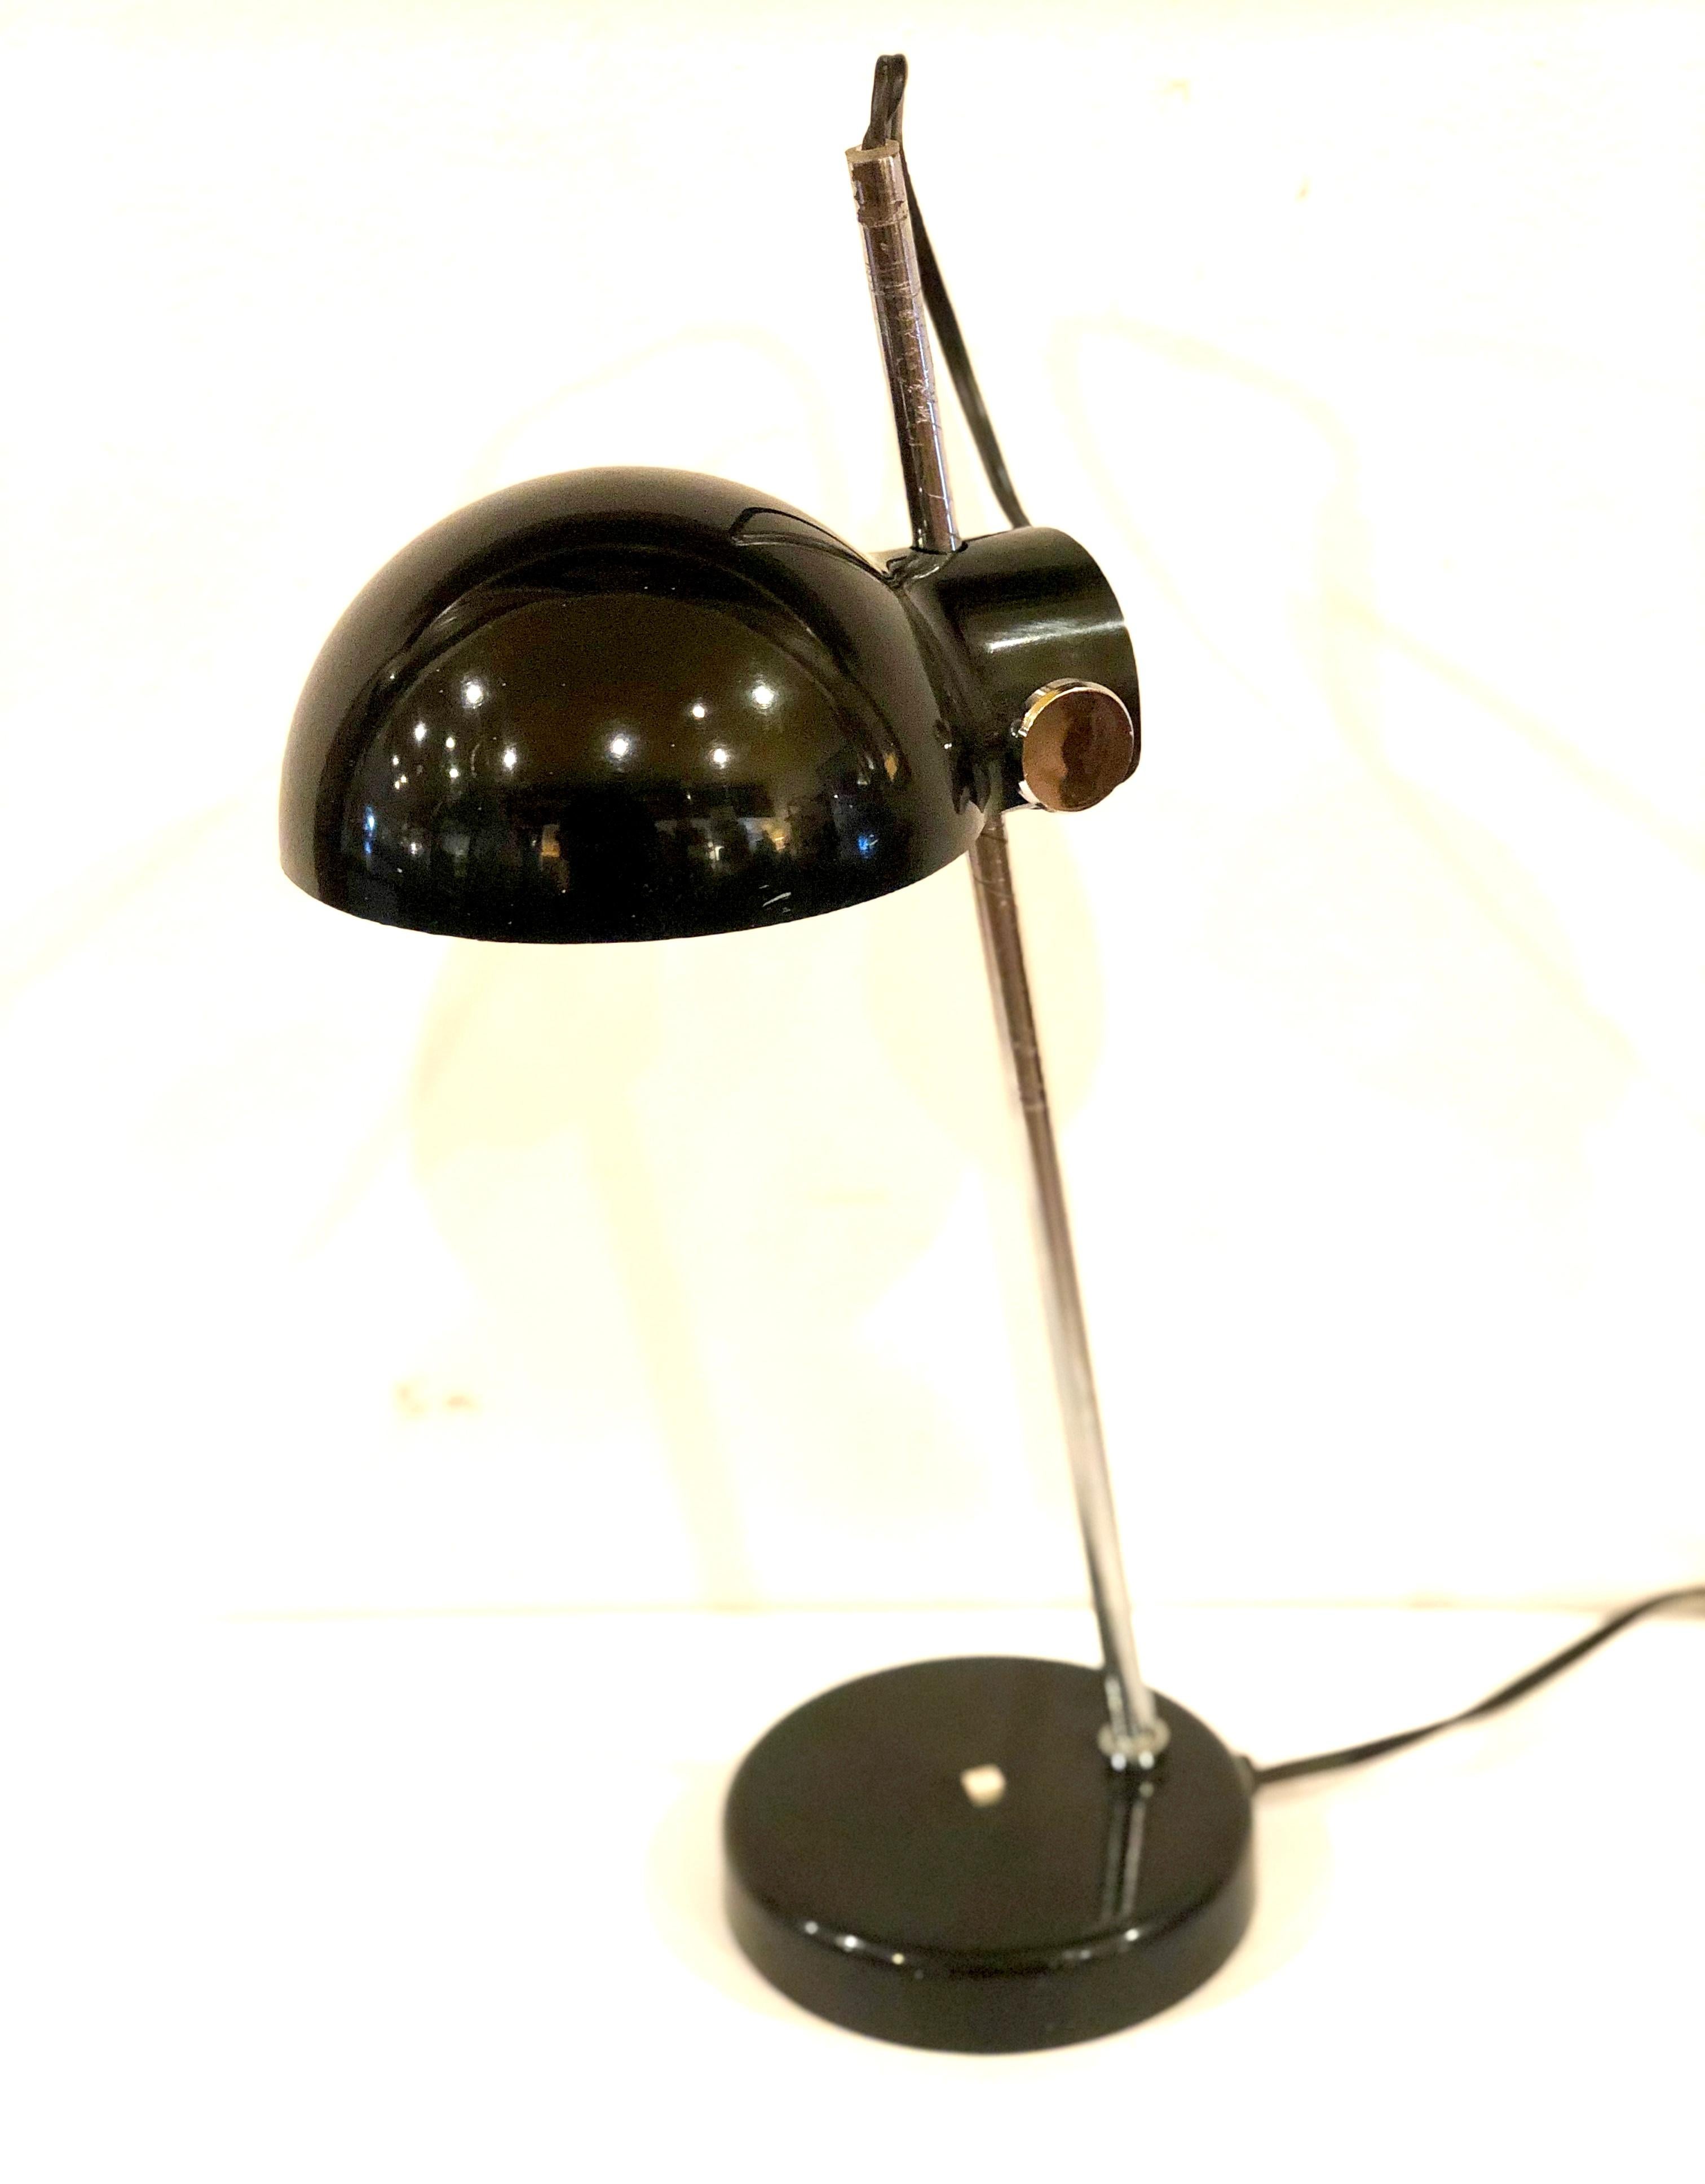 Lampe de bureau réglable fabriquée au Japon avec abat-jour rotatif qui monte et descend, en parfait état de fonctionnement. Le plastique a été poli, il est très beau. Le poteau chromé présente quelques marques dues à l'âge et au déplacement du store